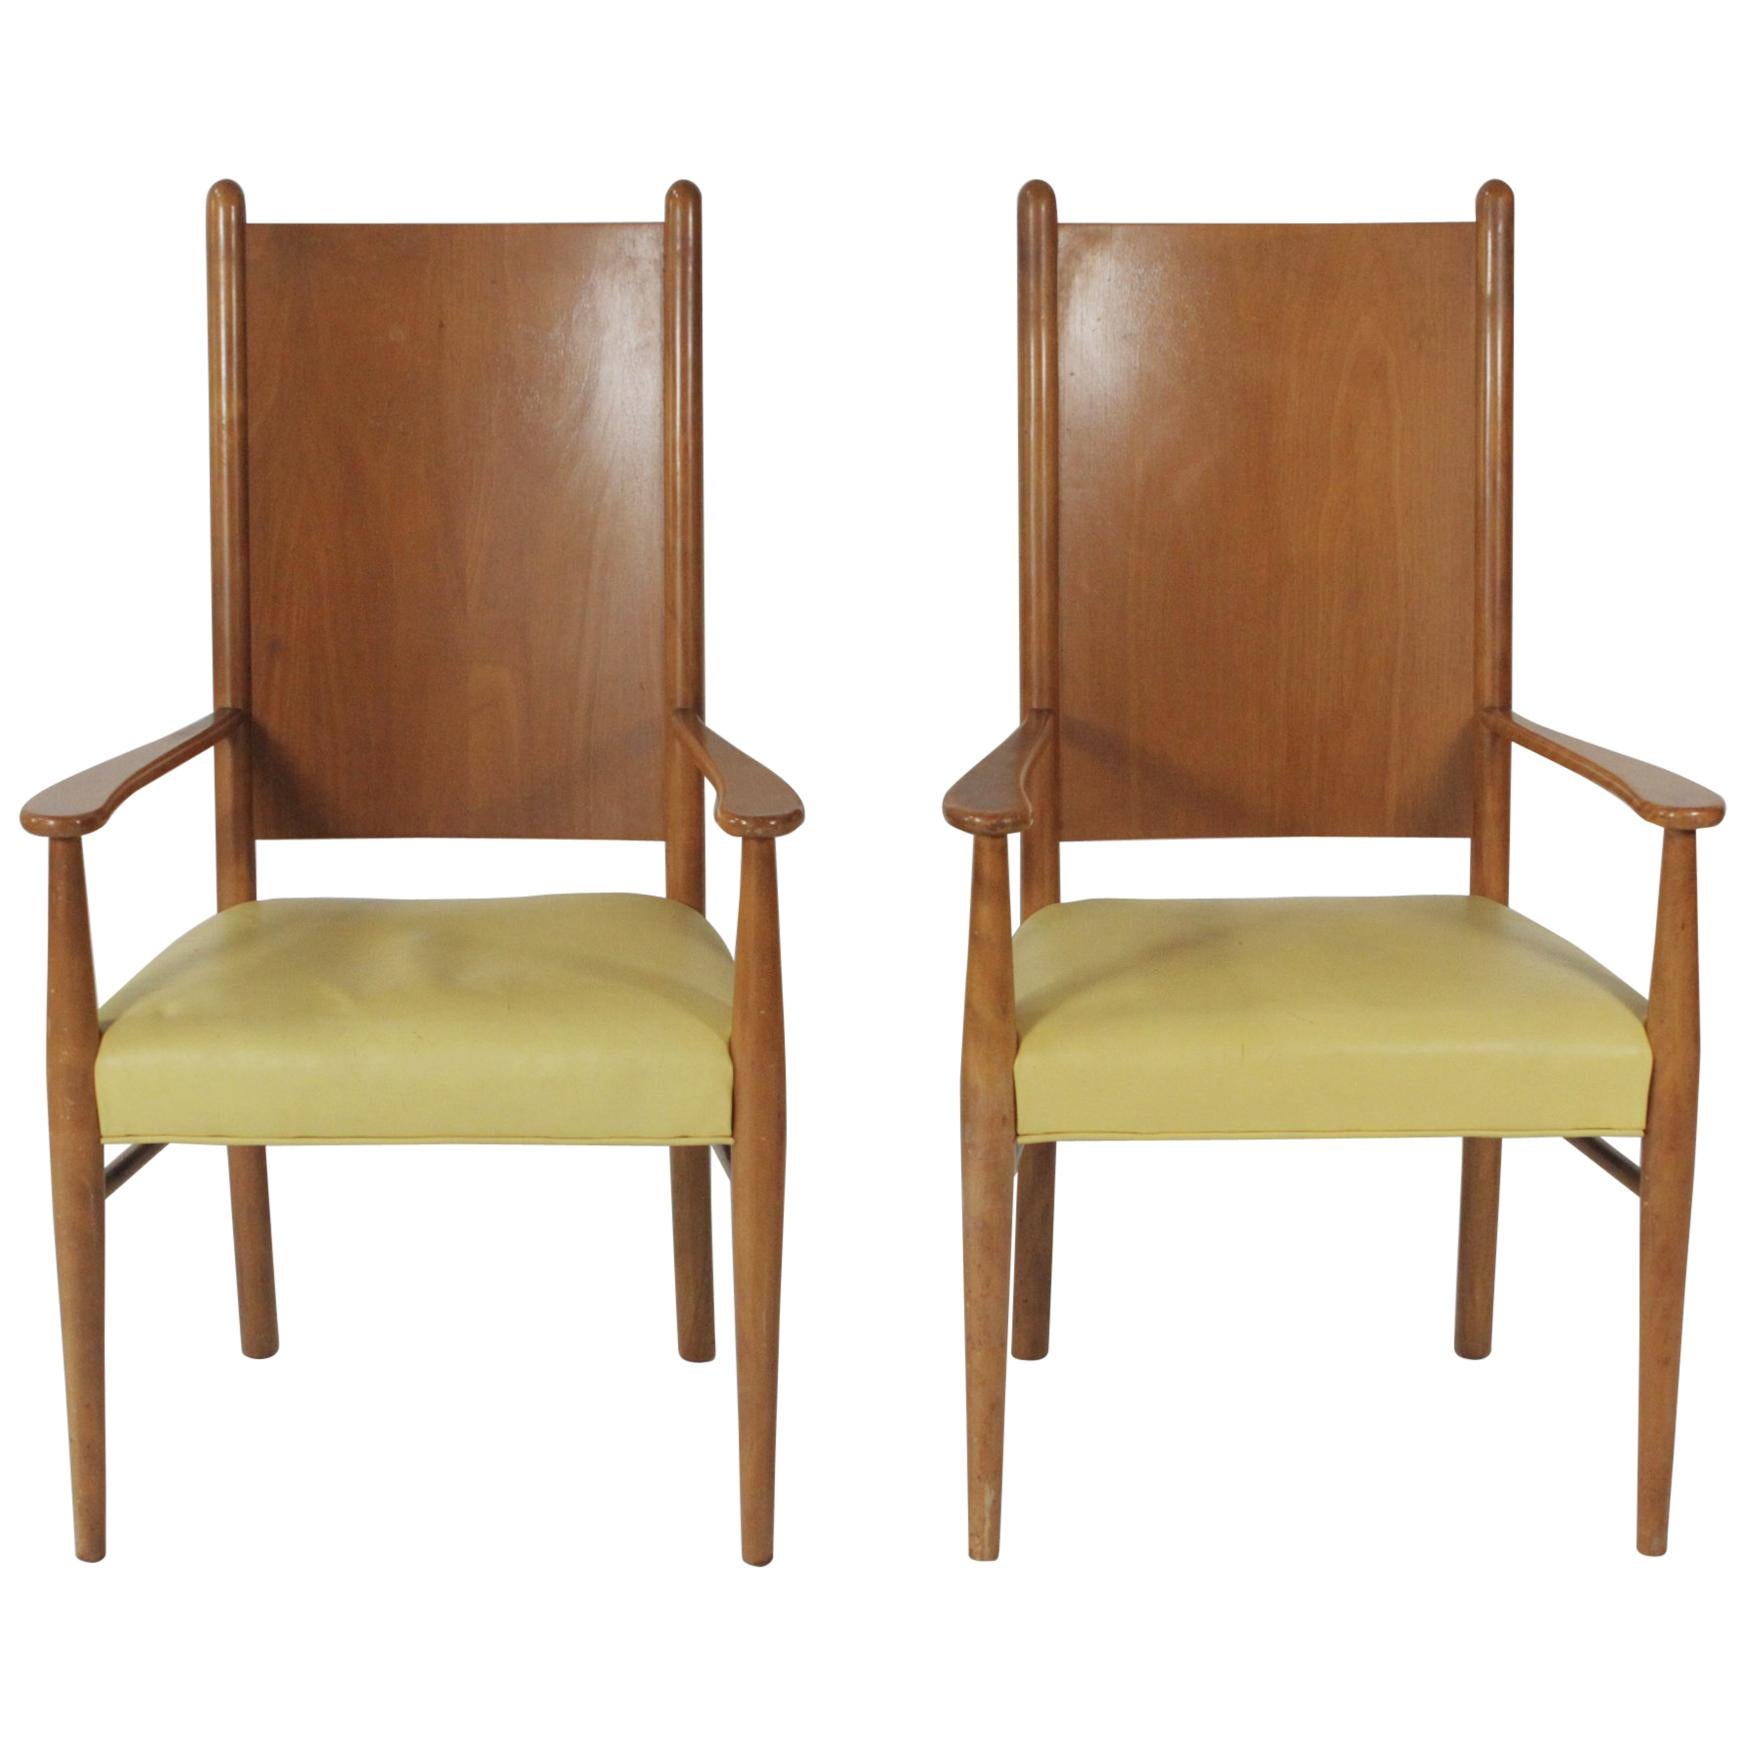 Pair of Robsjohn-Gibbings Armchairs by Widdicomb